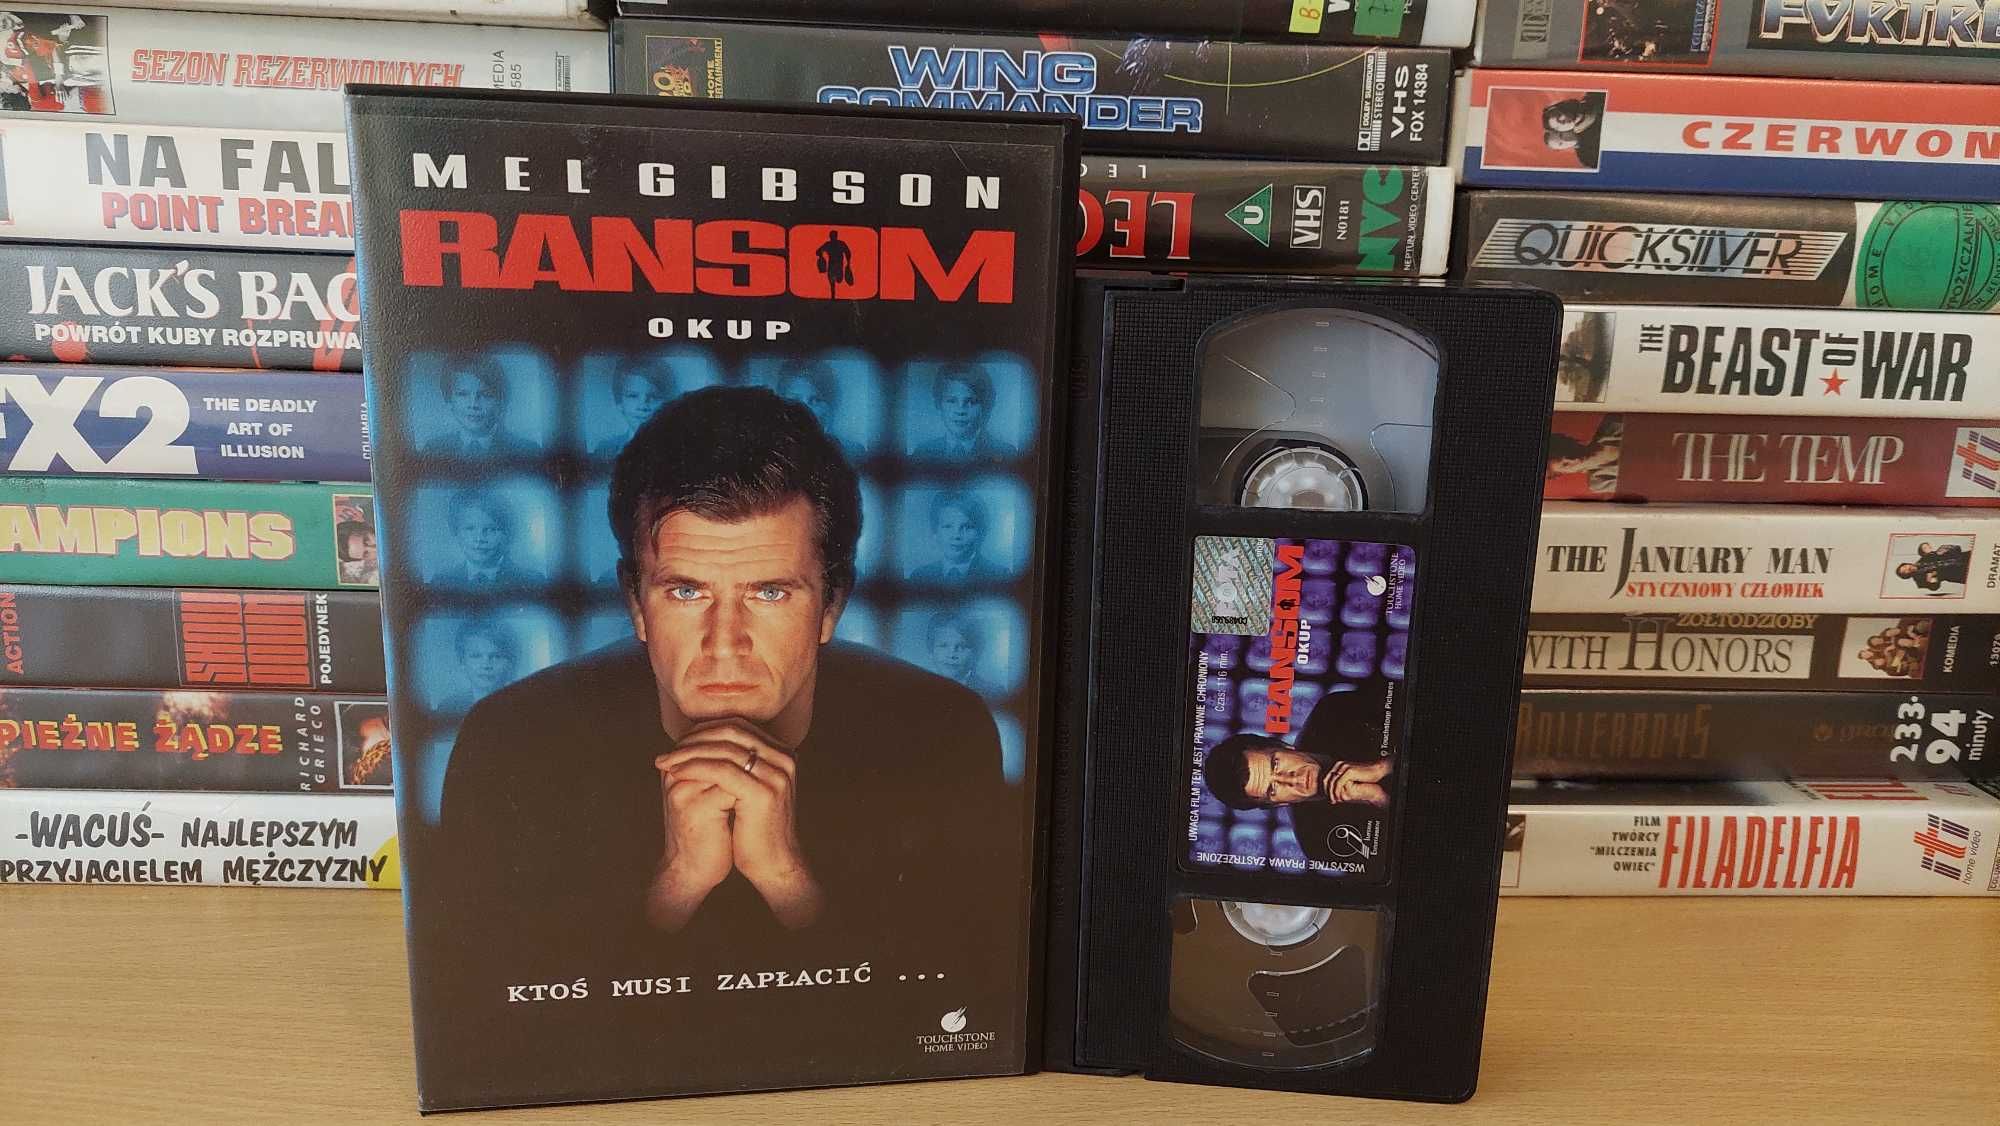 Okup - (Ransom) - VHS